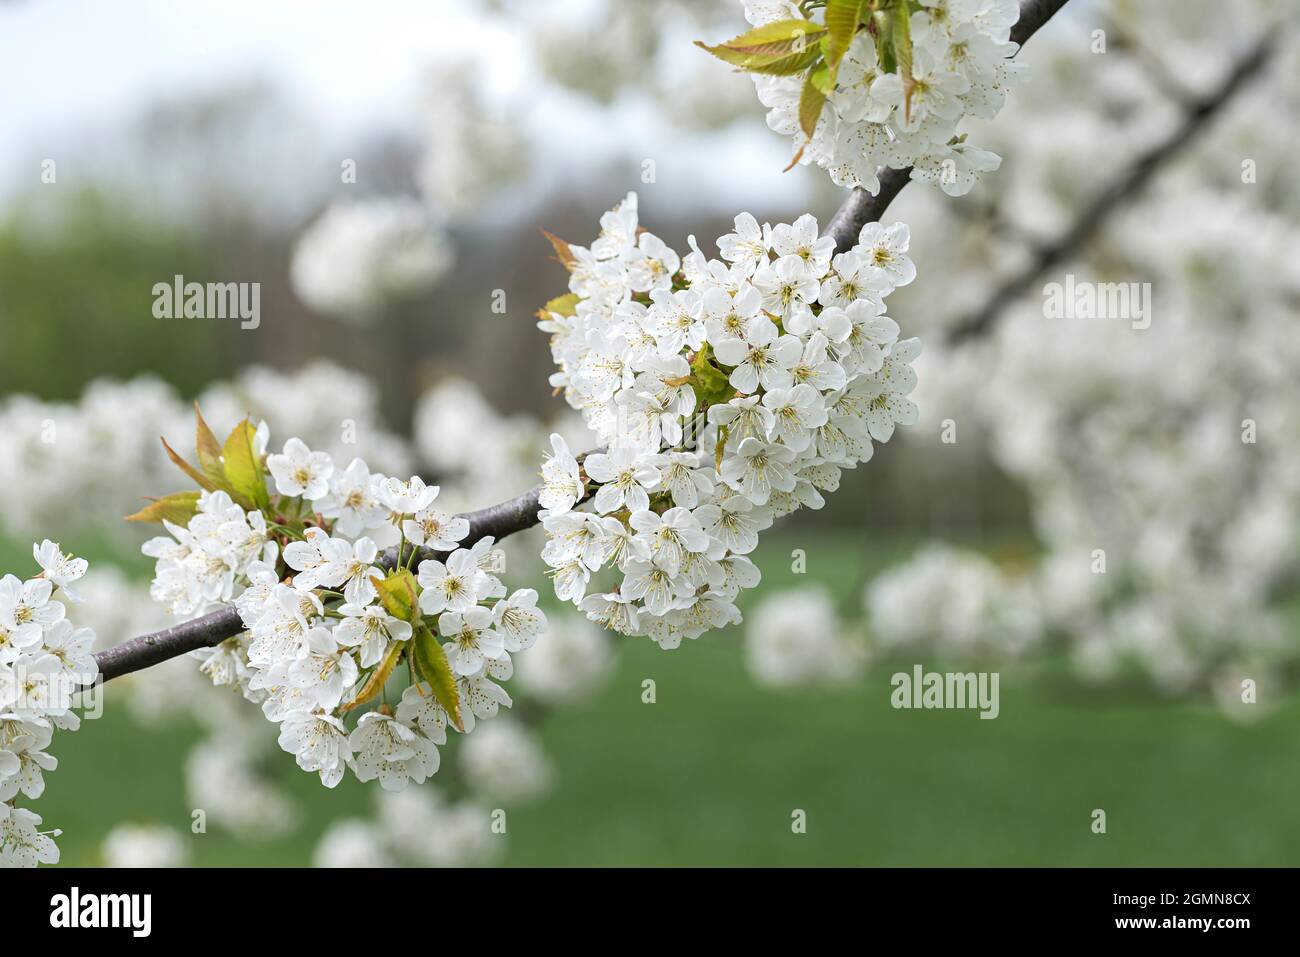 Cerisier, cerisier doux (Prunus avium), branche de cerisier en fleurs, Allemagne Banque D'Images